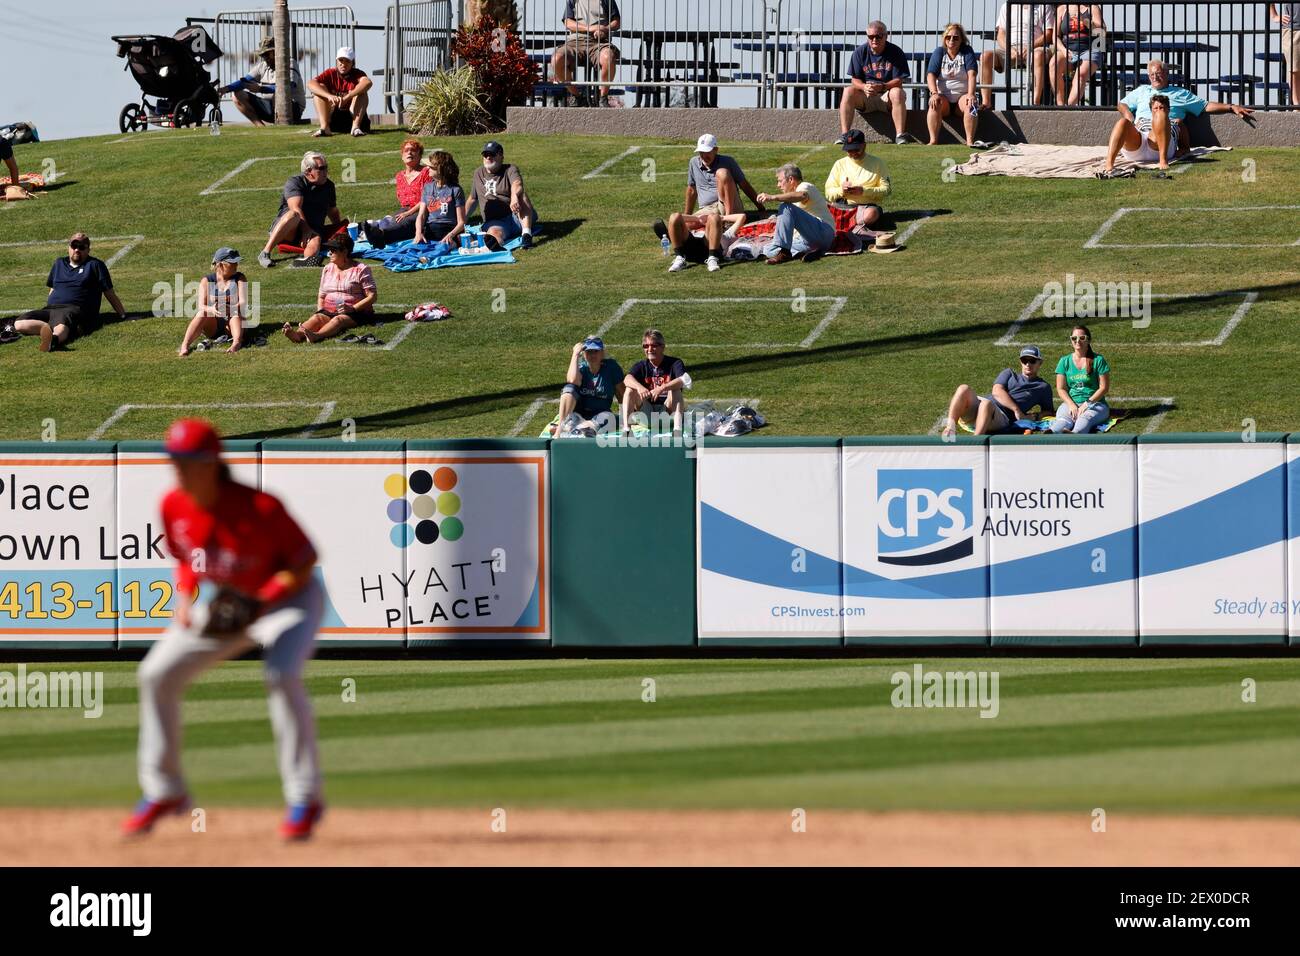 LAKELAND, FL - MÄRZ 3: Allgemeine Ansicht als Fans sind sozial distanziert im Außenfeld Gras während ein Grapefruit League Baseball-Spiel zwischen den Stockfoto